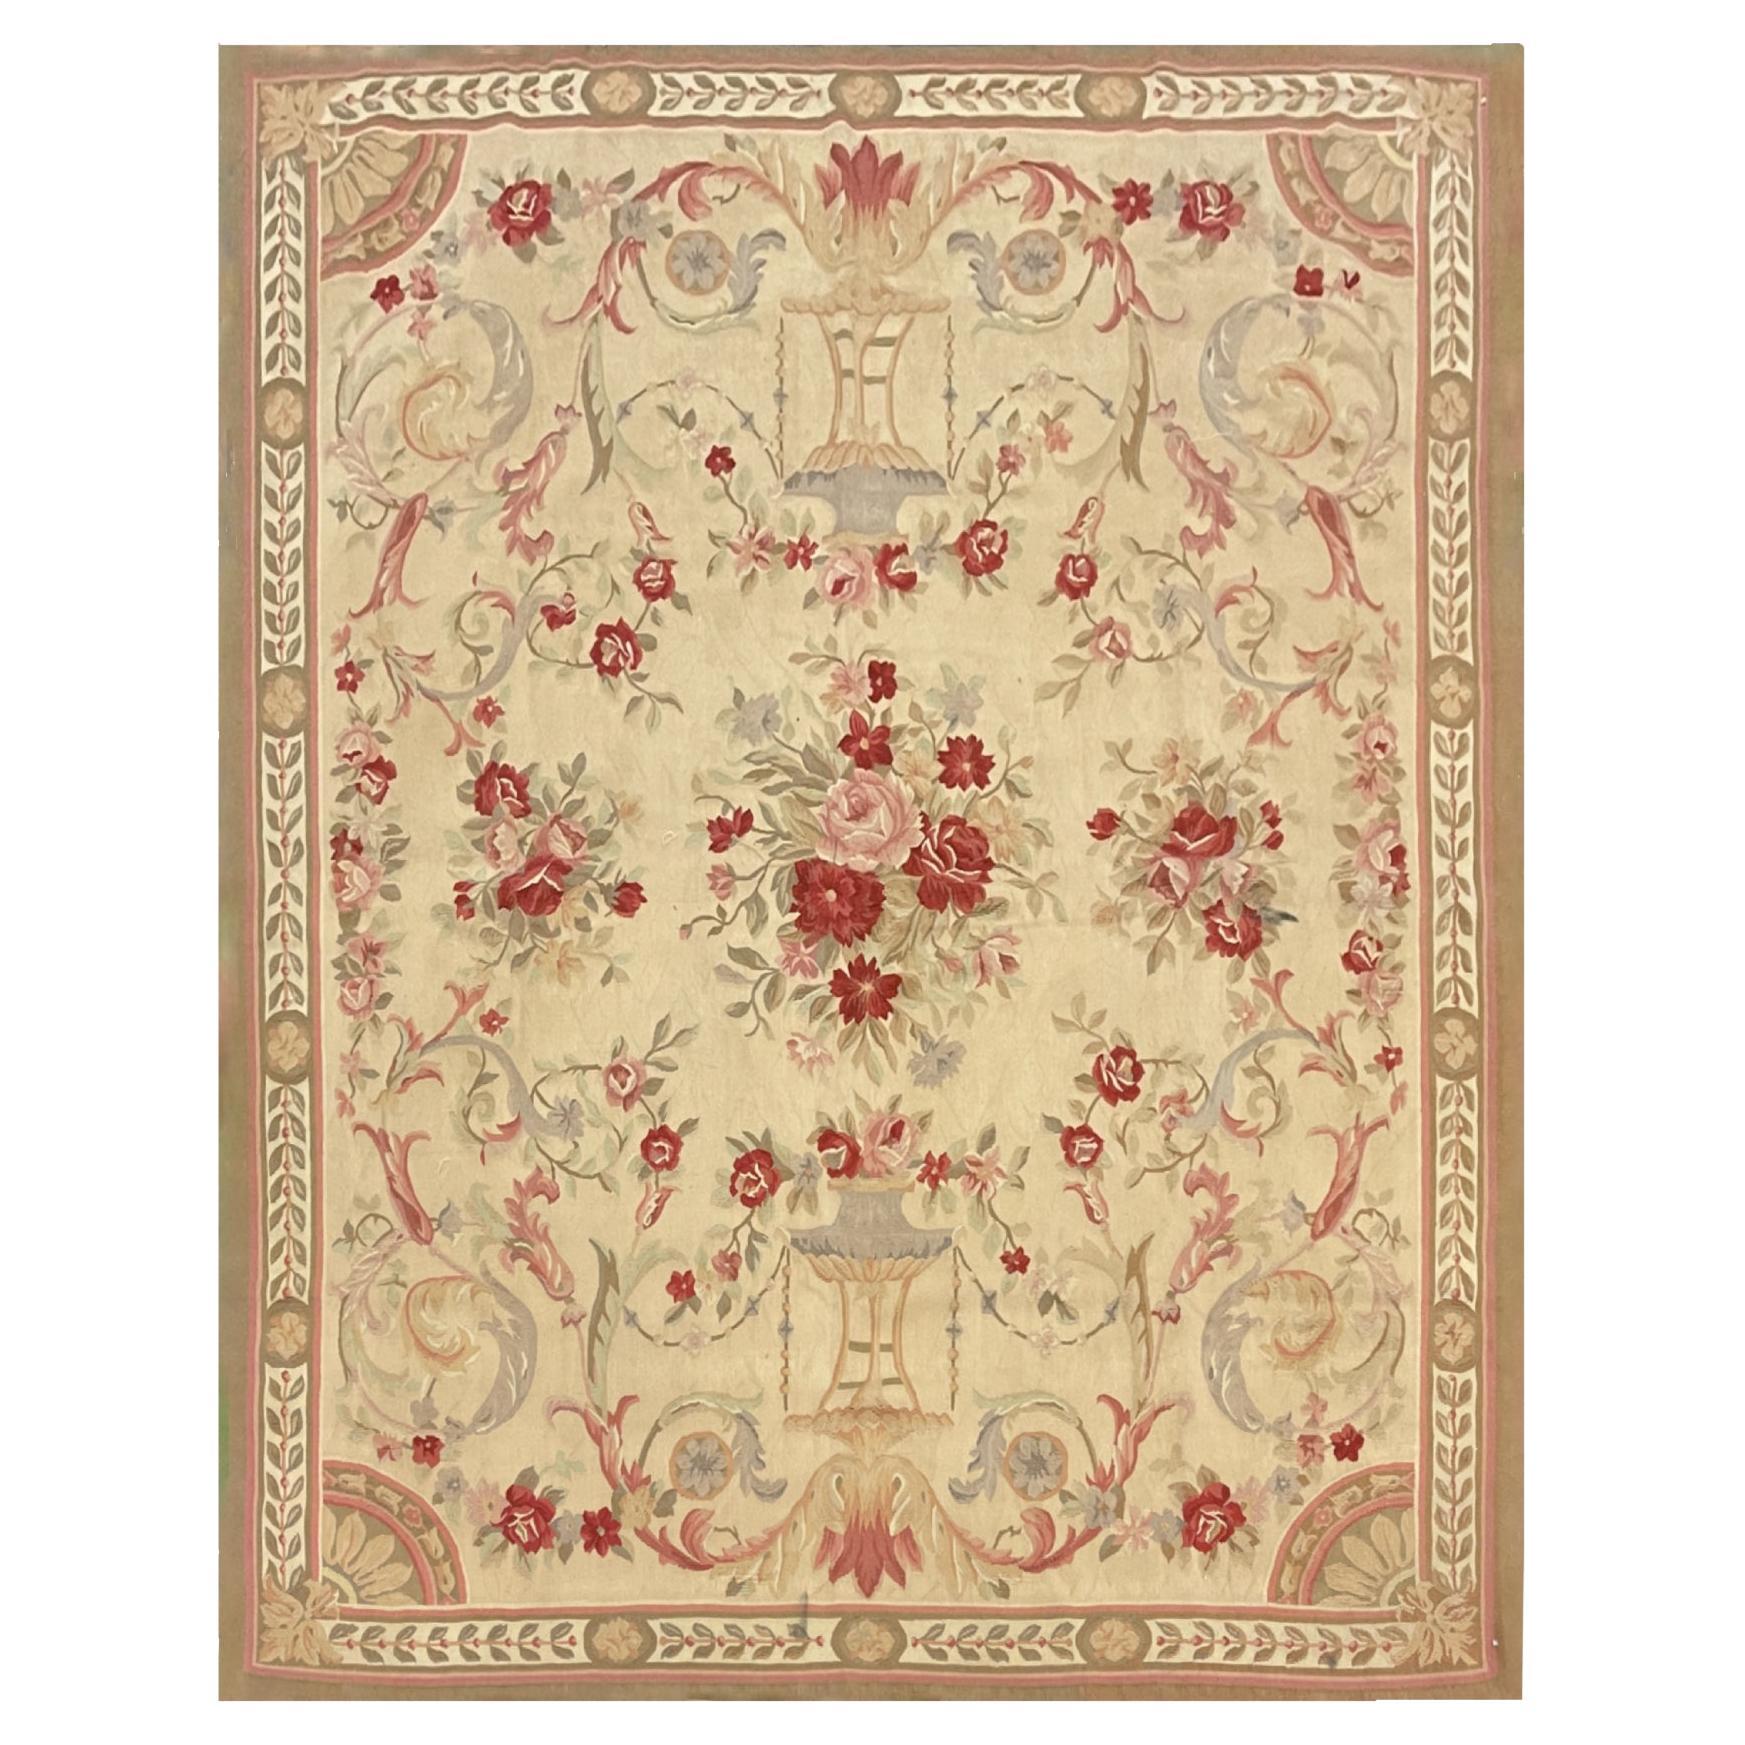 Tapis traditionnel d'Aubusson rose beige tapis floral tissé à la main en laine de salon 